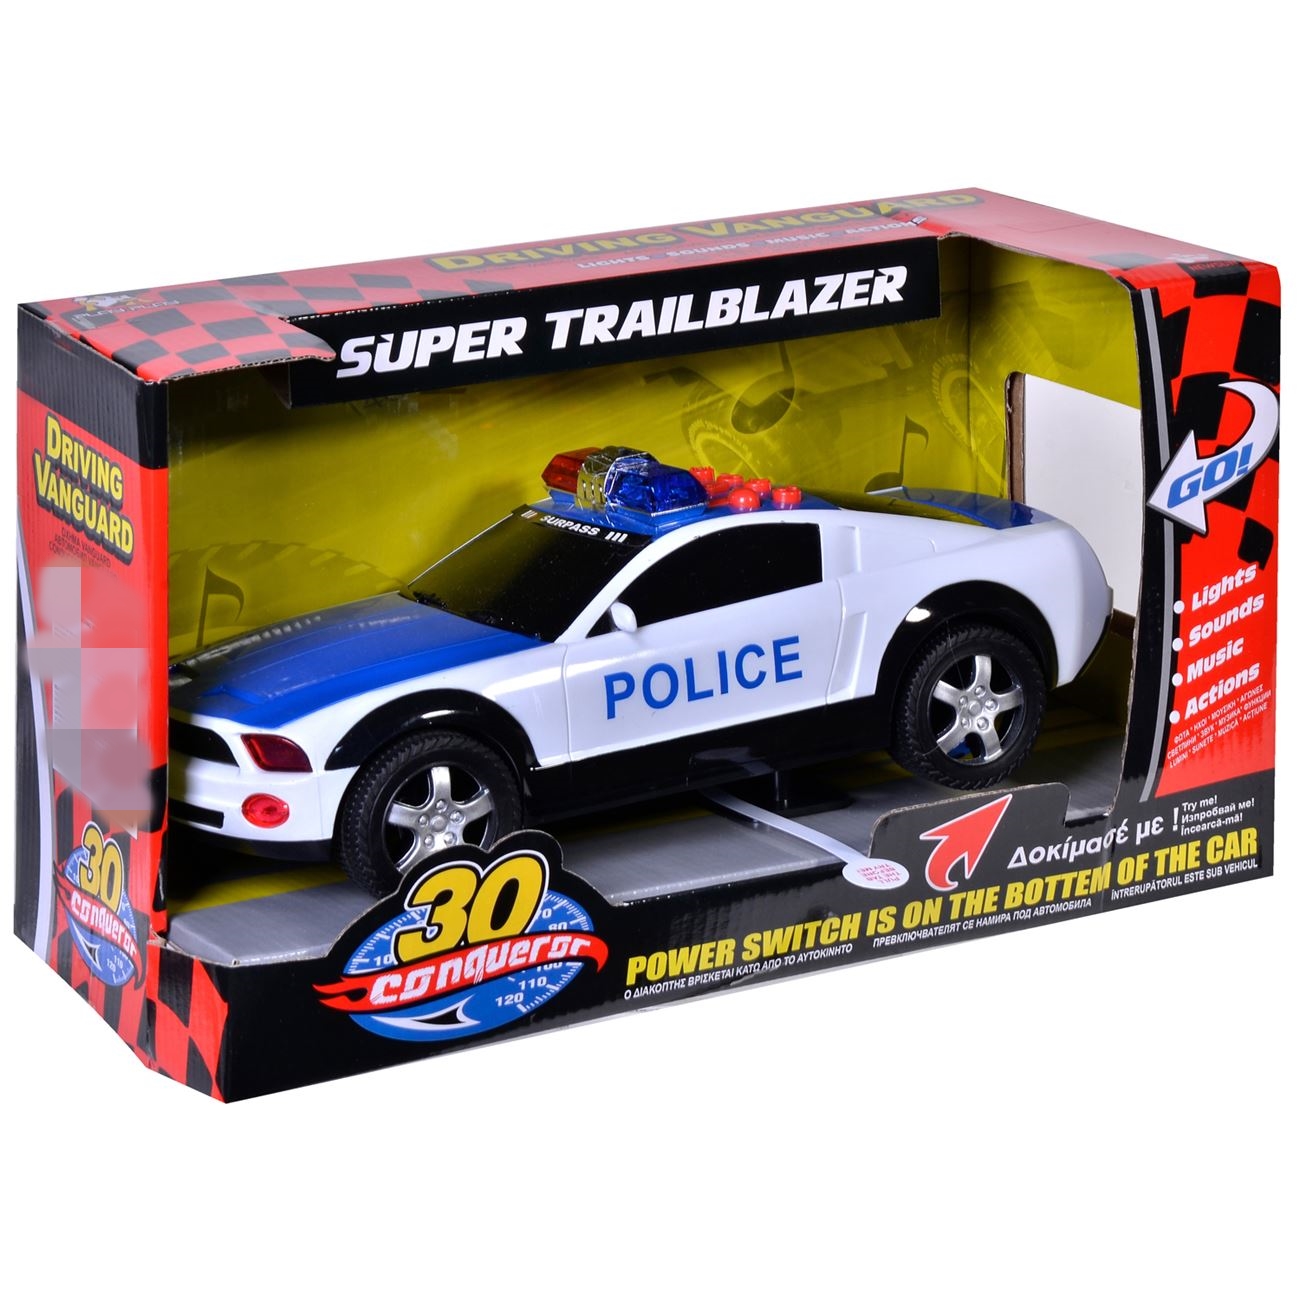 Rendőrségi jármű hanggal és világítással 30 cm